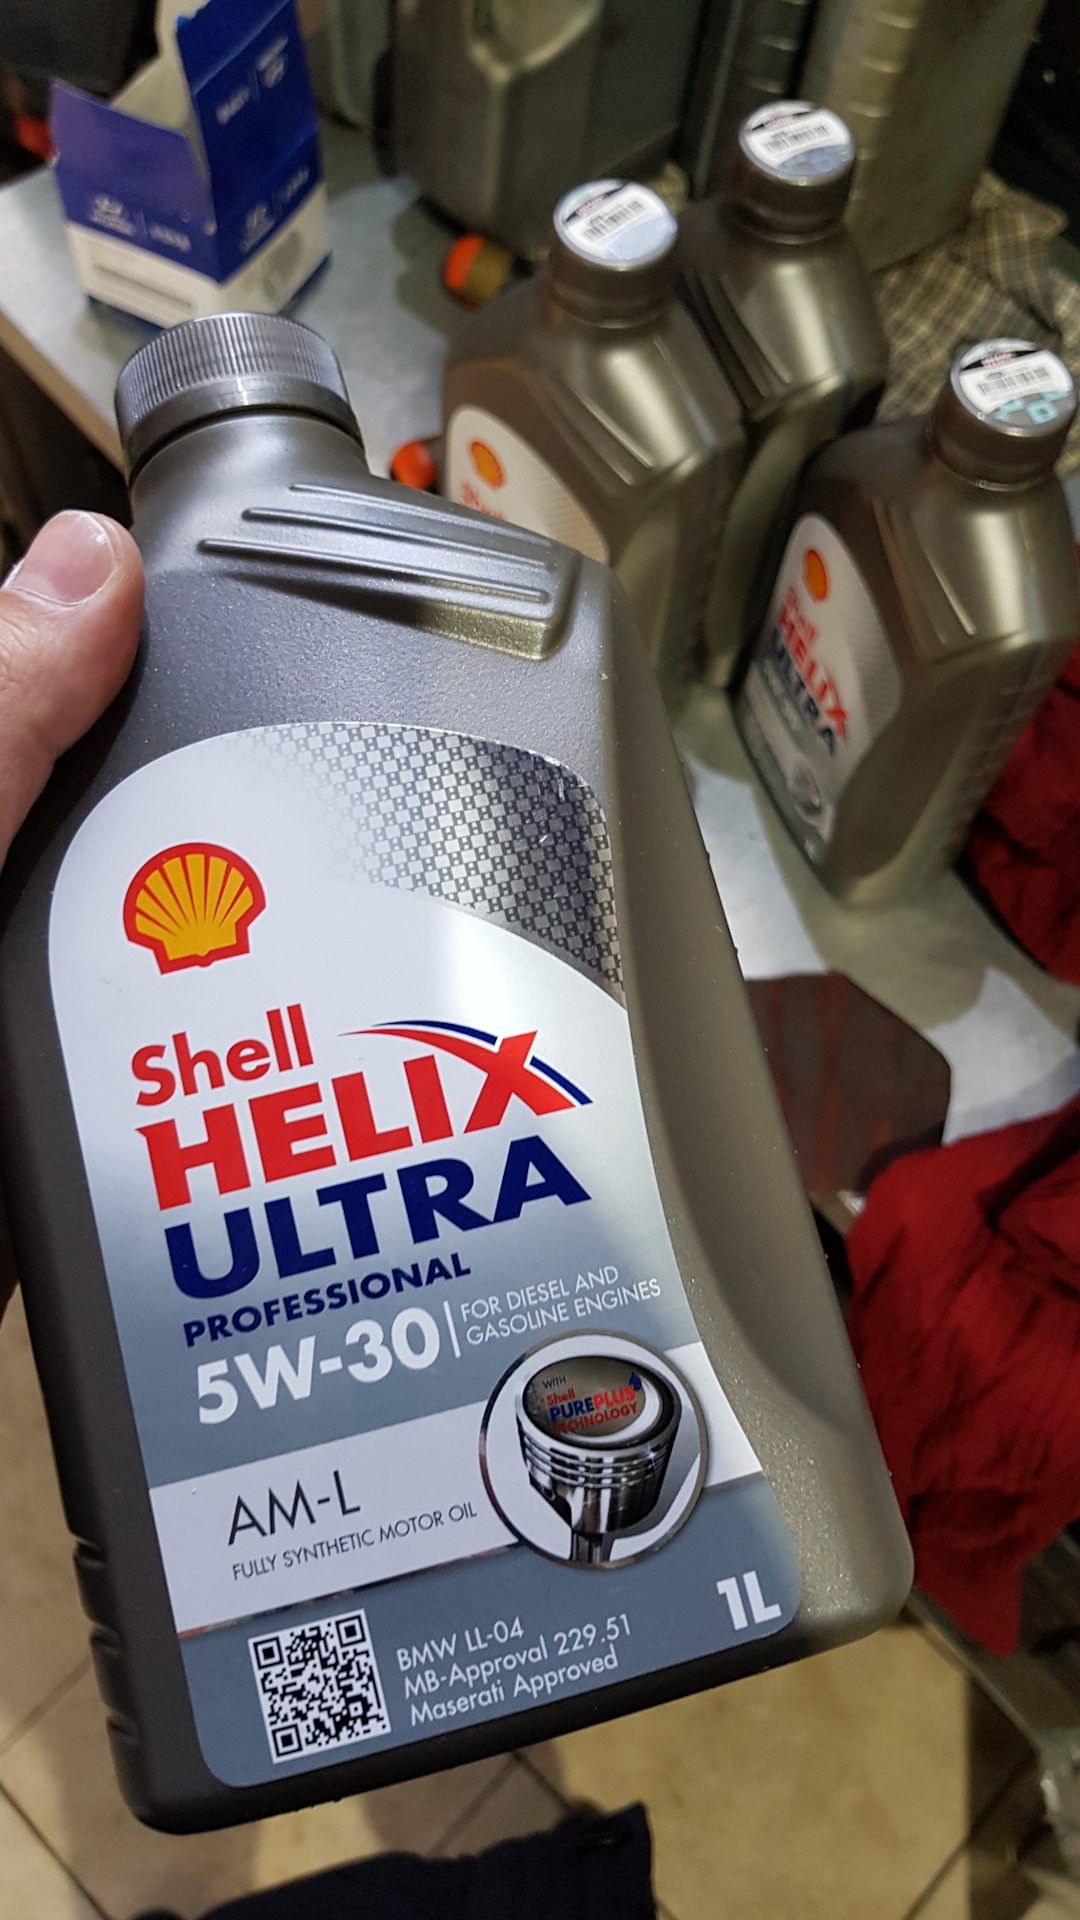 Shell ultra am l. Shell Helix Ultra 5w30 am-l. Шелл Хеликс ультра профессионал 5w30 AML. Shell Ultra am-l 5w30 5л. Shell Helix Ultra professional am-l 5w-30.